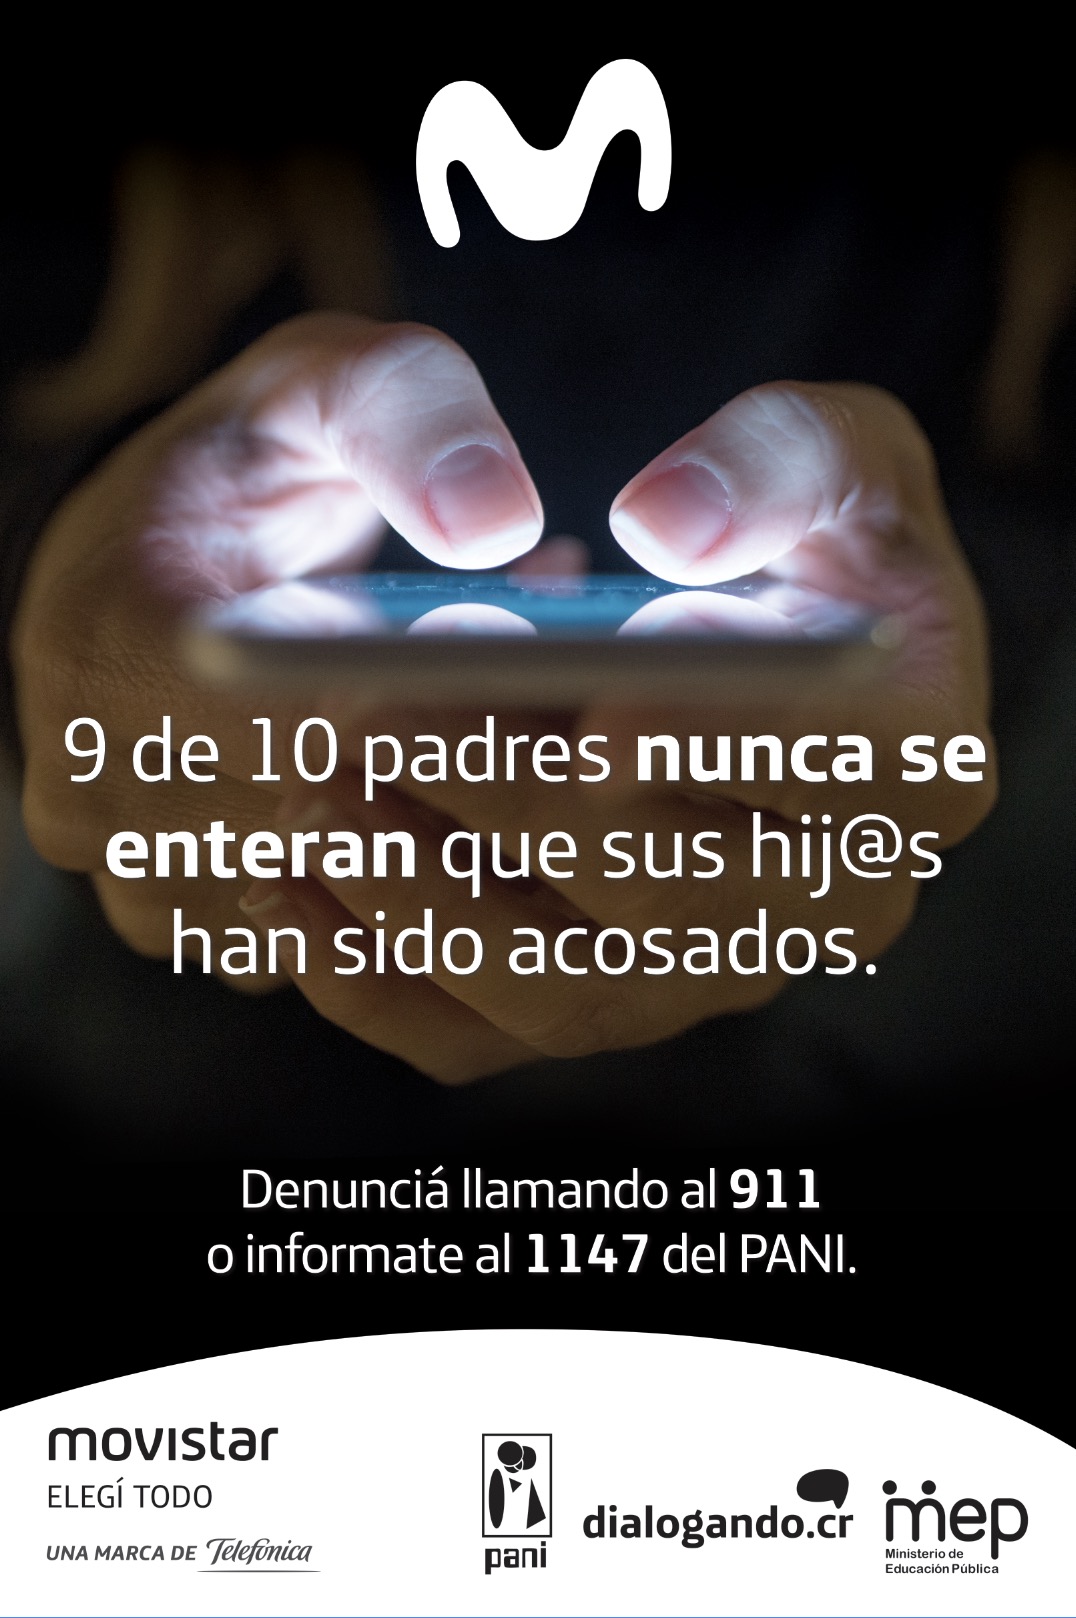 1076px x 1618px - Movistar Costa Rica presenta campaÃ±a para sensibilizar acerca del uso  seguro de internet y redes sociales